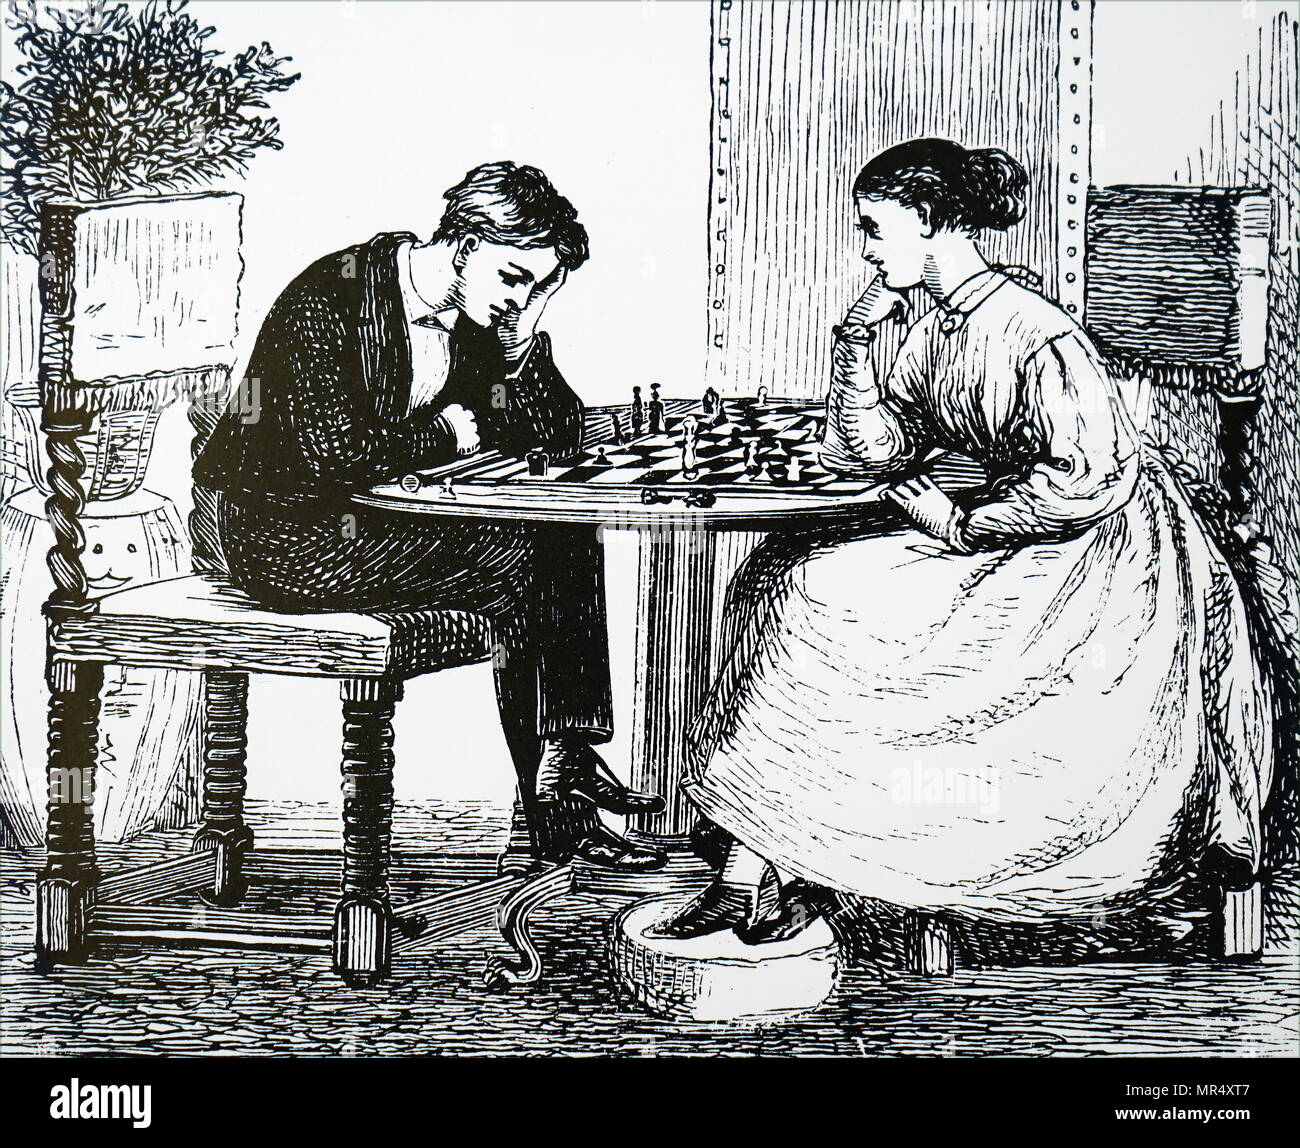 Ilustración mostrando un agradable juego de ajedrez. Fecha del siglo XIX Foto de stock